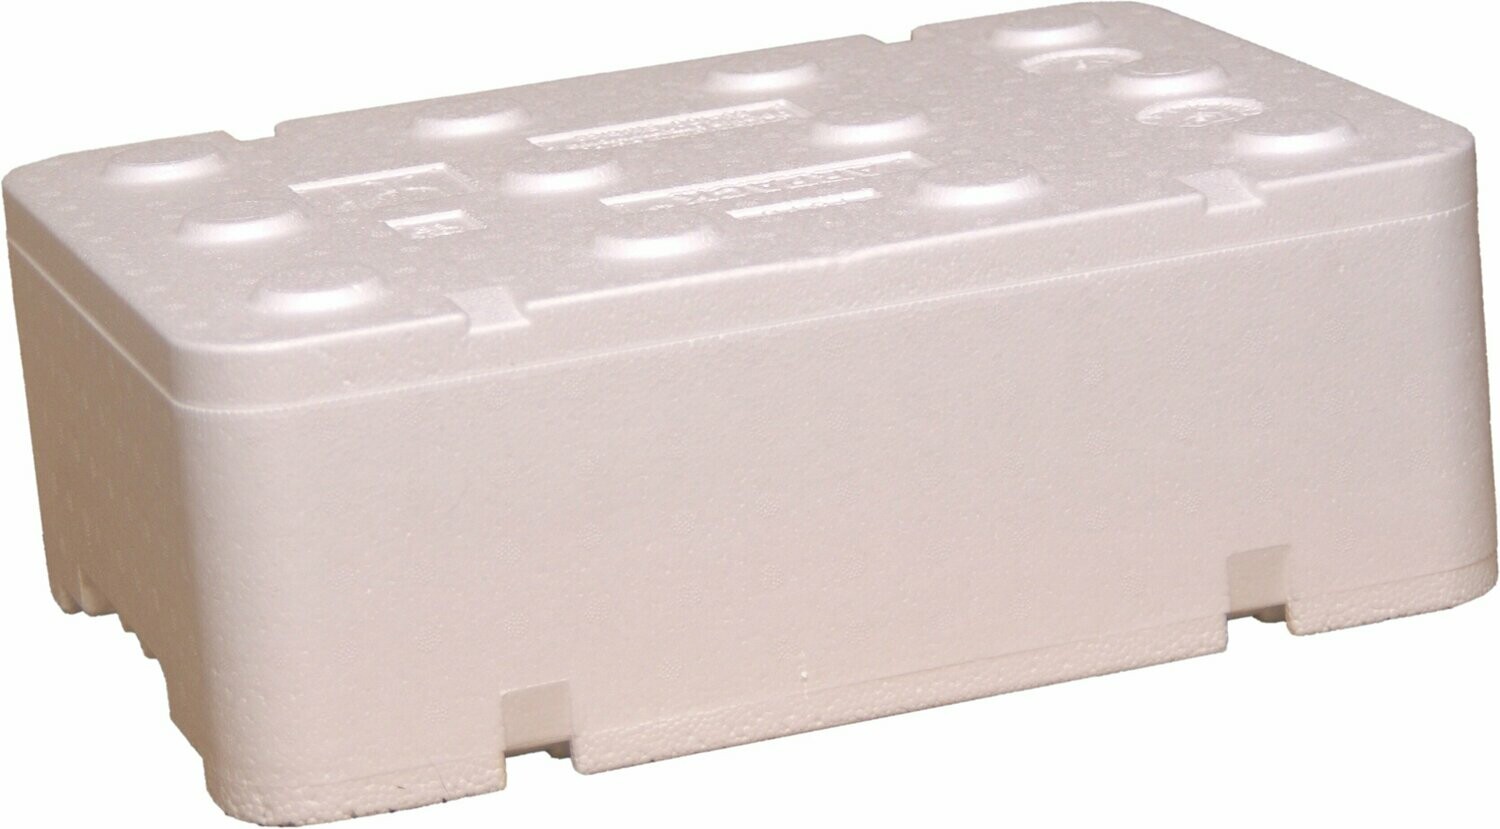 FB160 opakowanie styropianowe do wysyłki pudełko białe 12,94 Litra